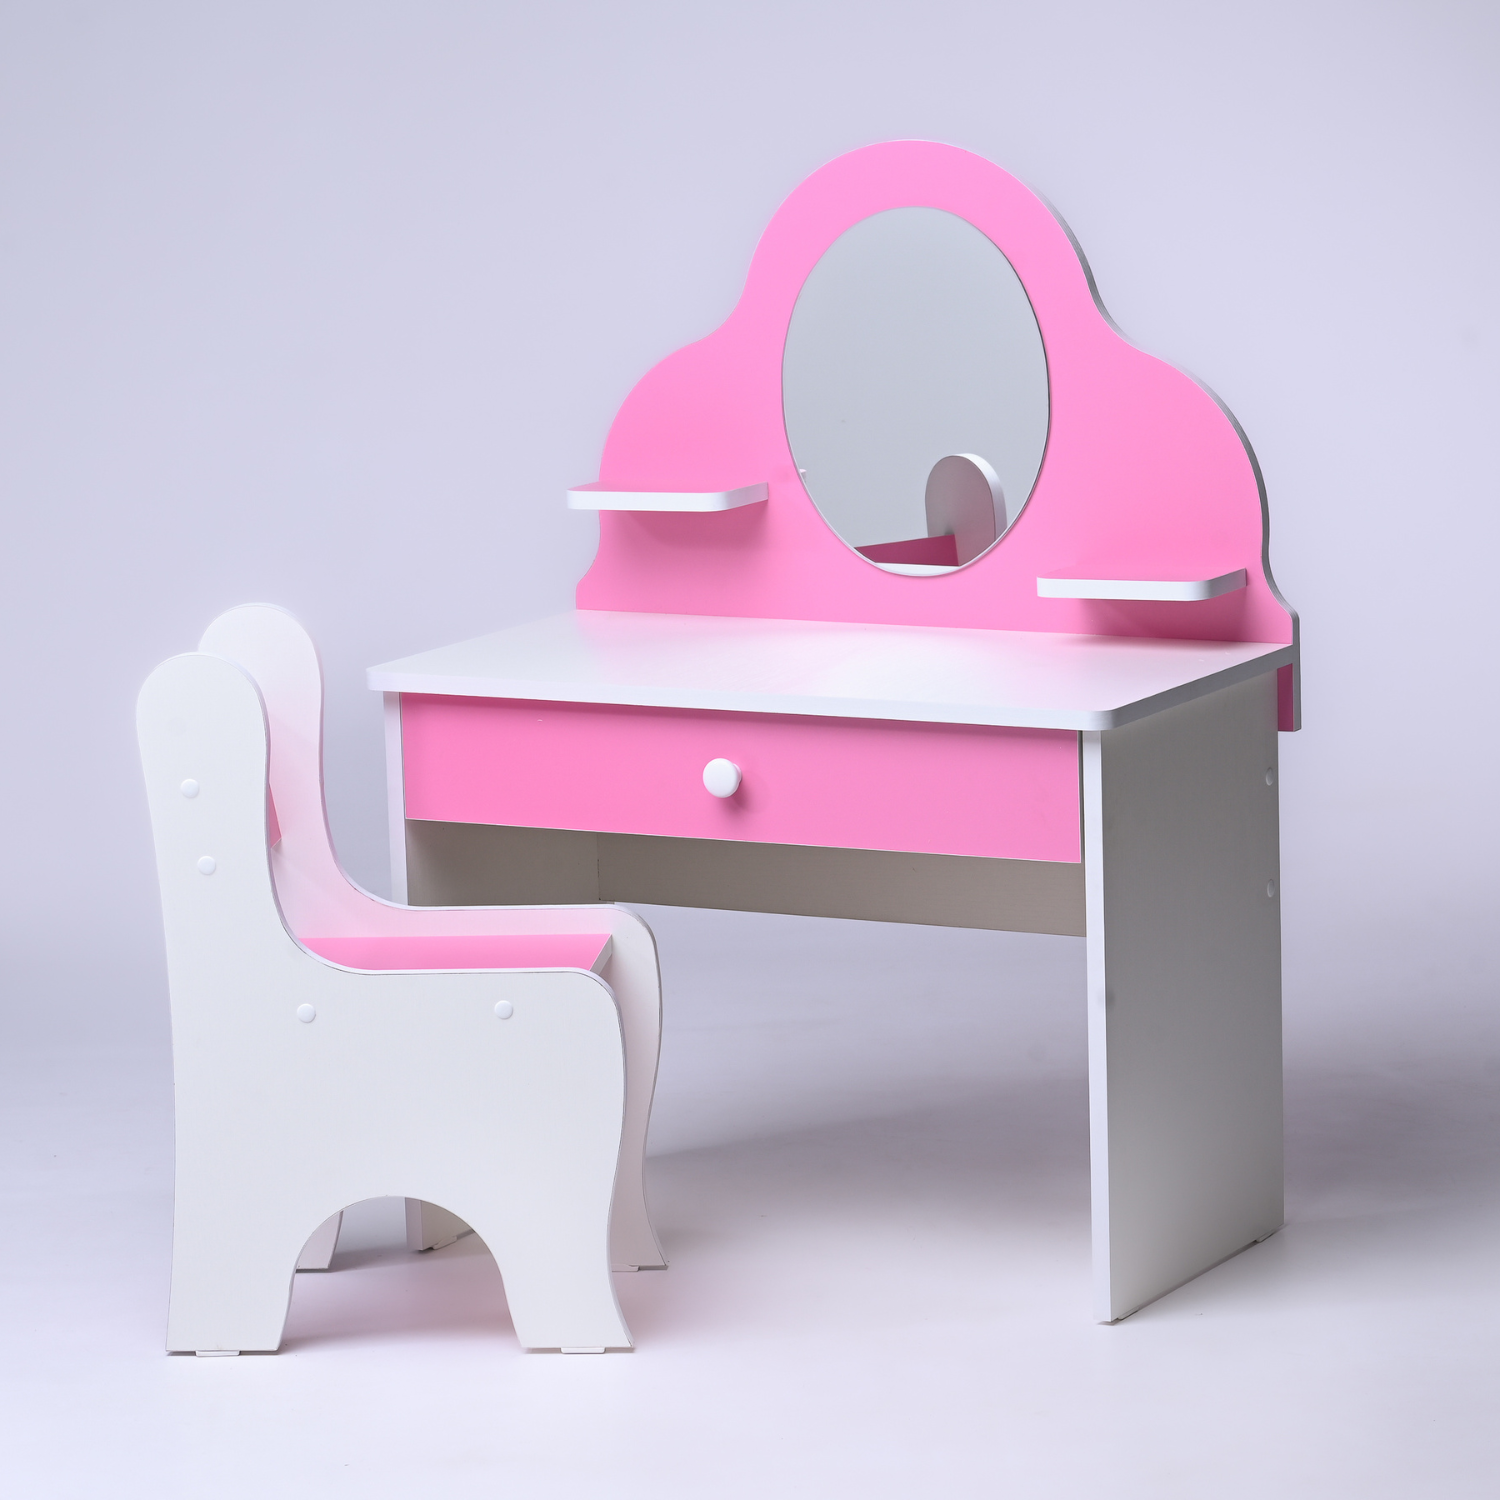 Туалетный столик для девочки со стульчиком KariKids купить в интернет-магазине Wildberries